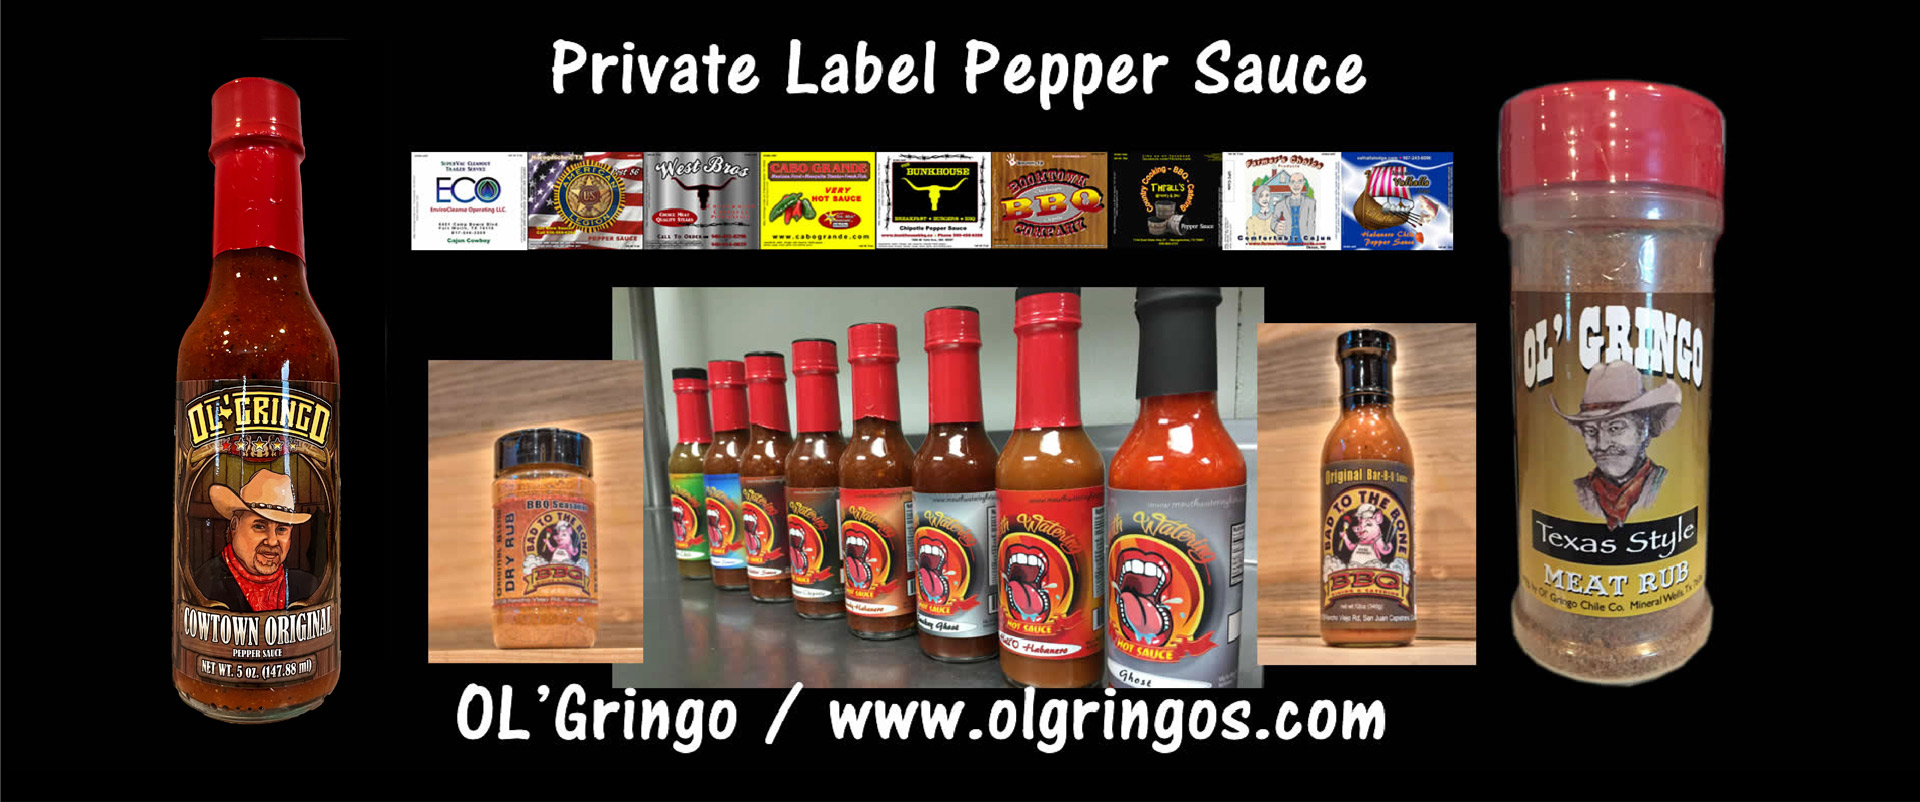 OL'Gringo Pepper Sauce / www.olgringos.com